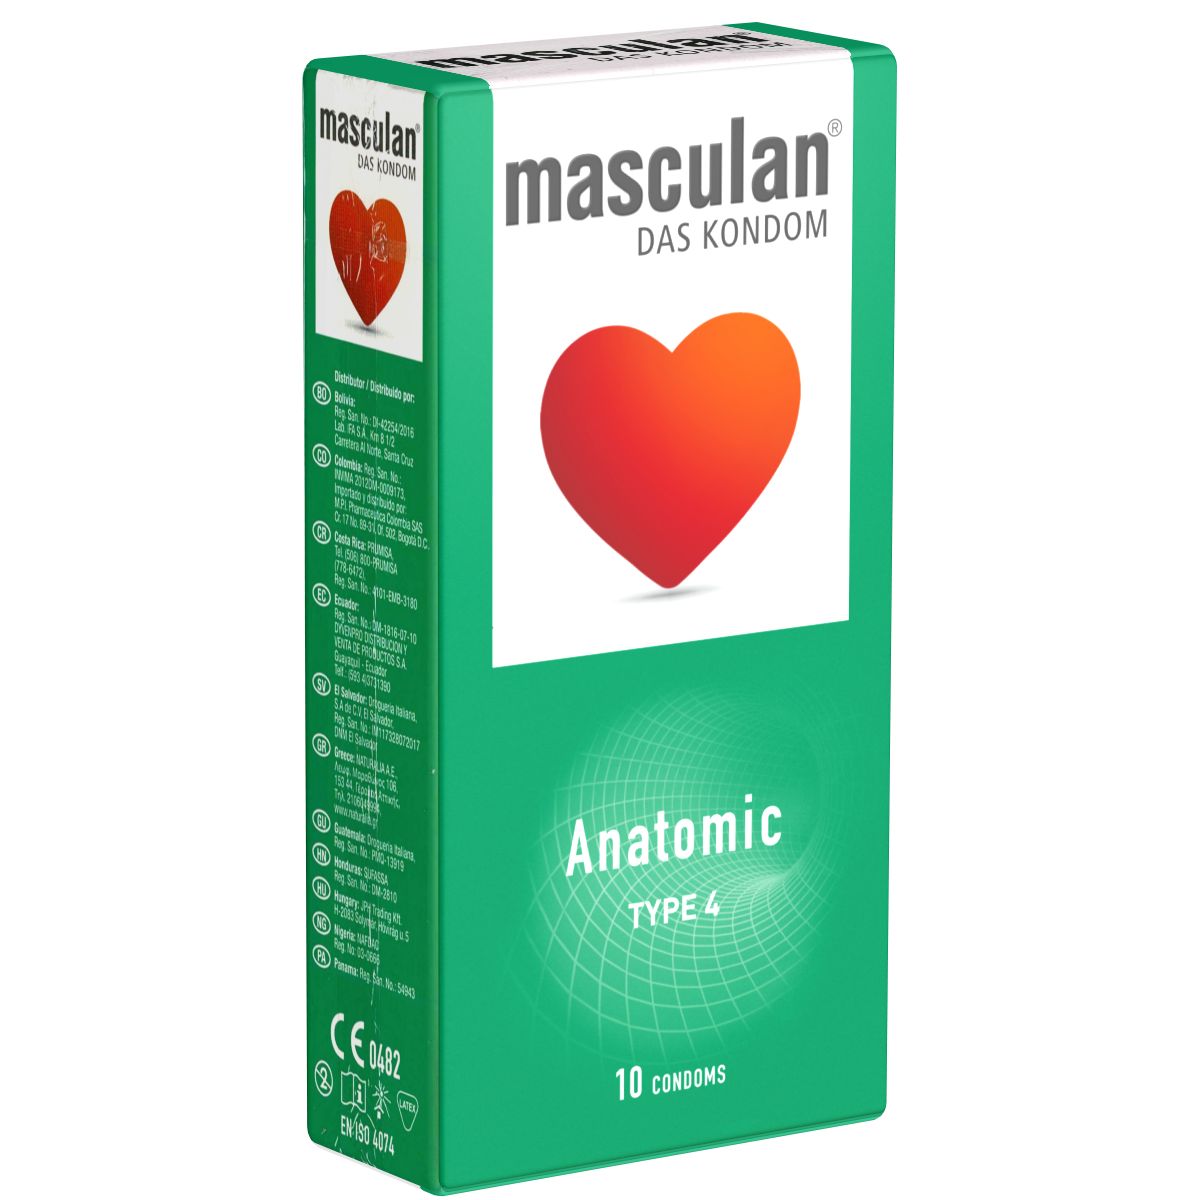 Masculan *Typ 4* (anatomic) anatomische Kondome mit enger Kranzfurche